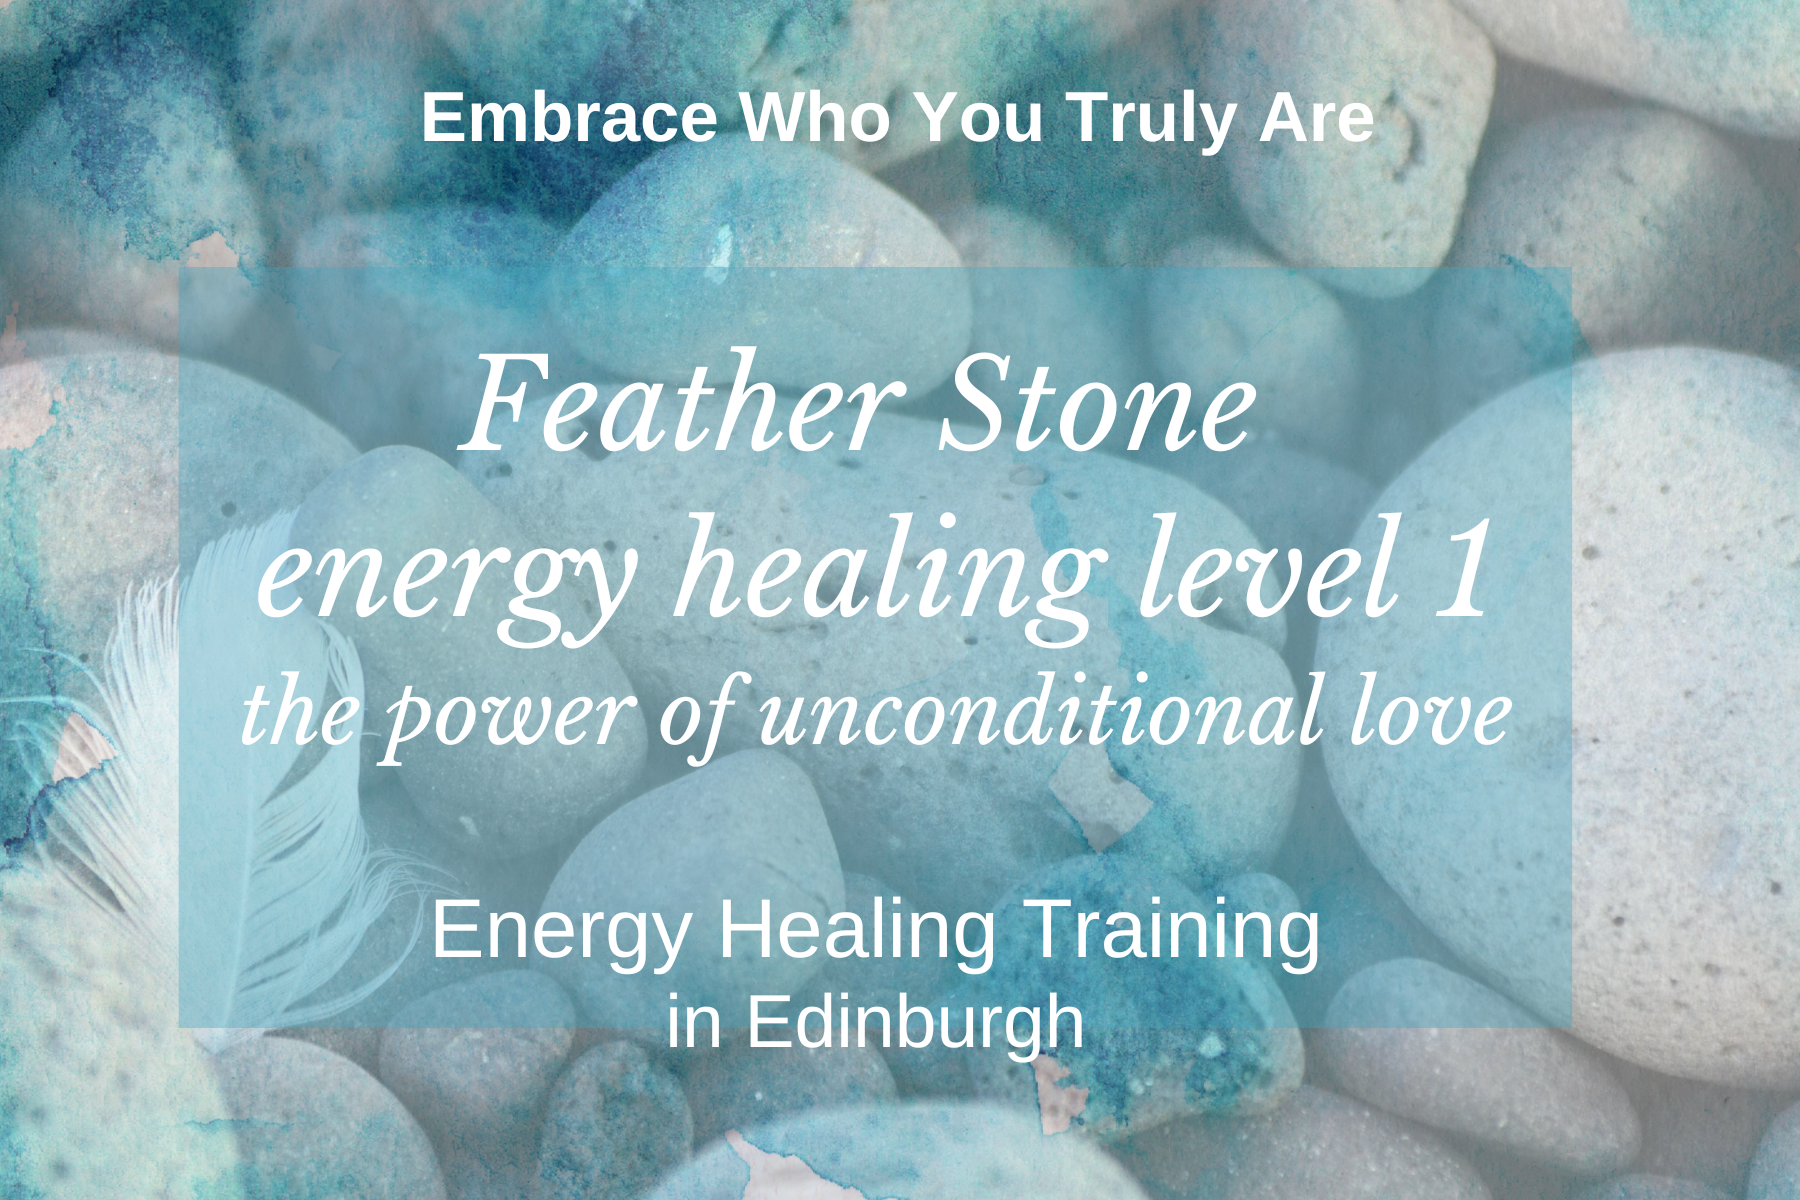 Feather Stone Energy Healing Training - Level 1

​